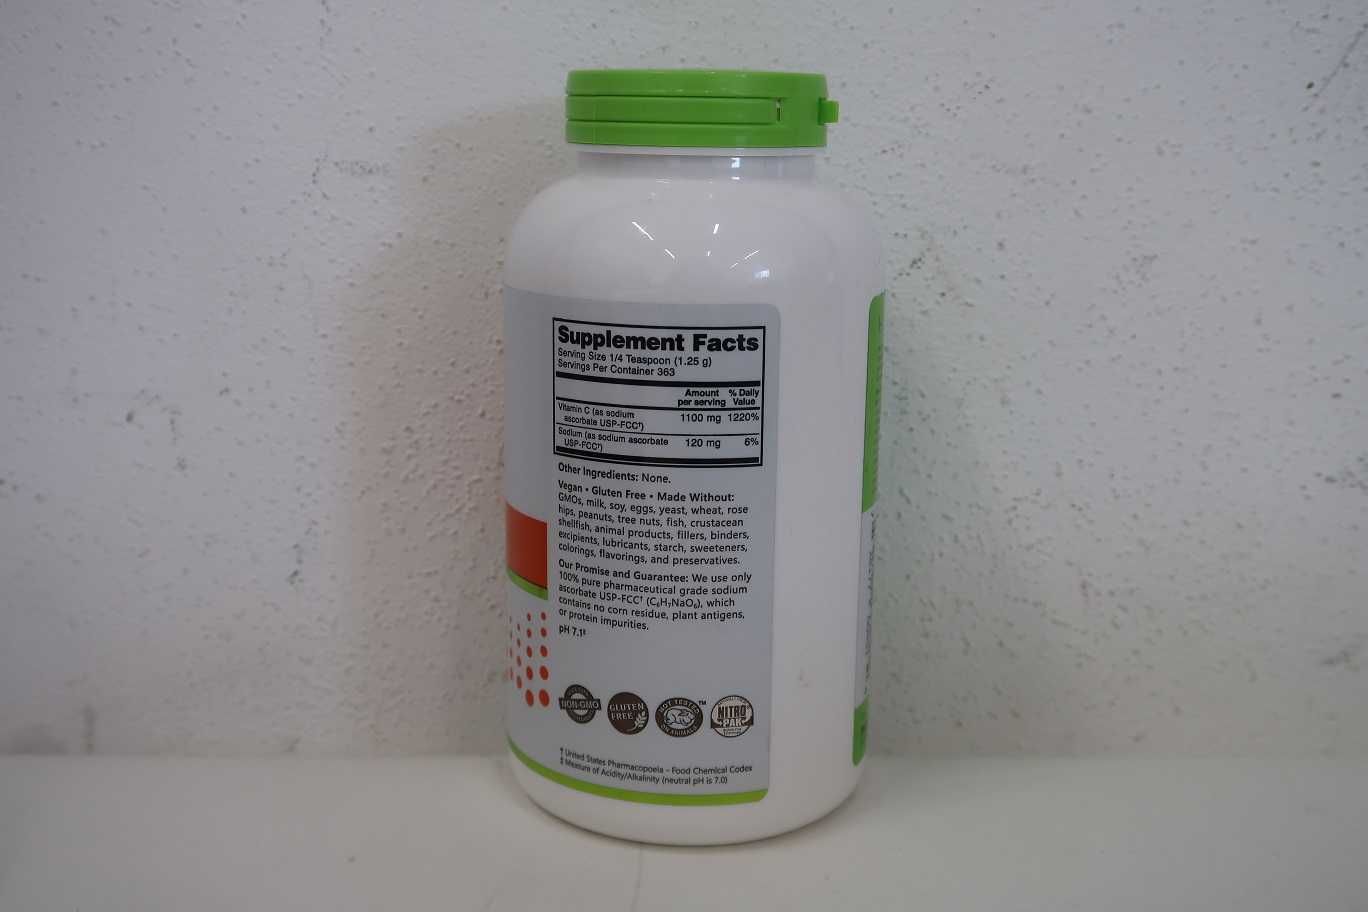 NutriBiotic Immunity Sodium Ascorbate Crystalline Powder 16 oz (454 g)